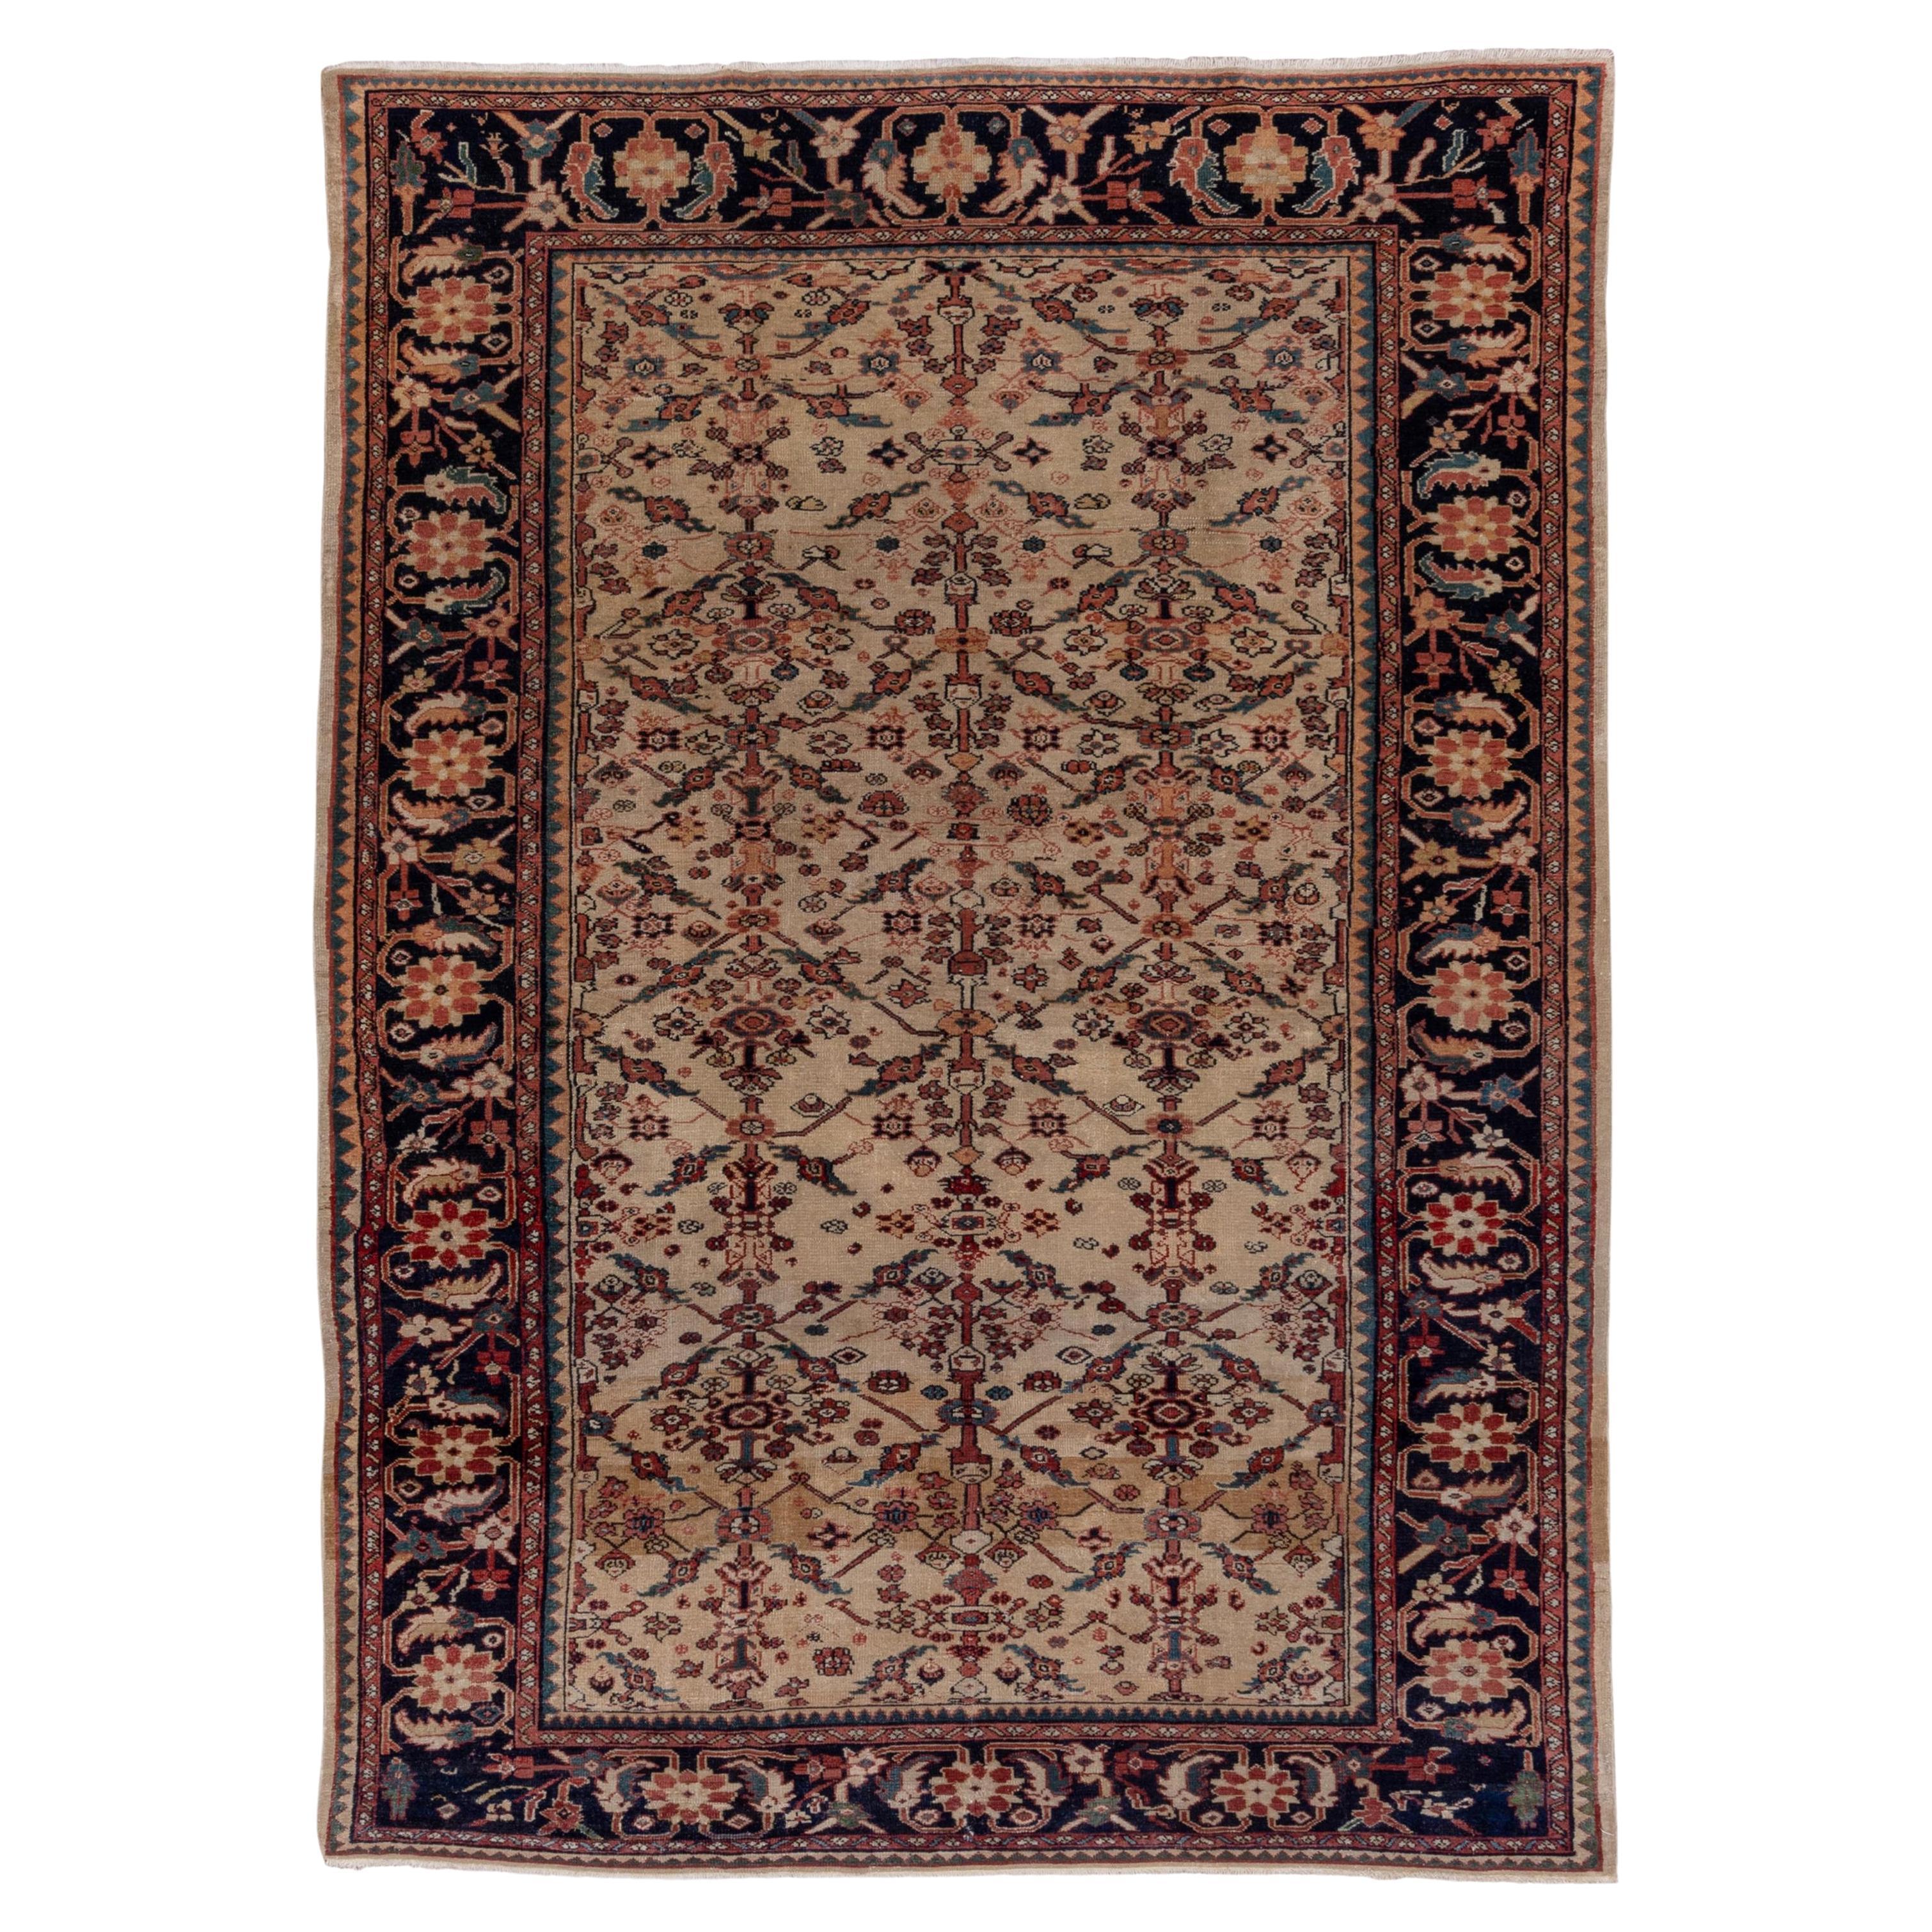 Antiker persischer Sultanabad-Teppich, elfenbeinfarben, dunkle marineblaue Bordüren, um 1900